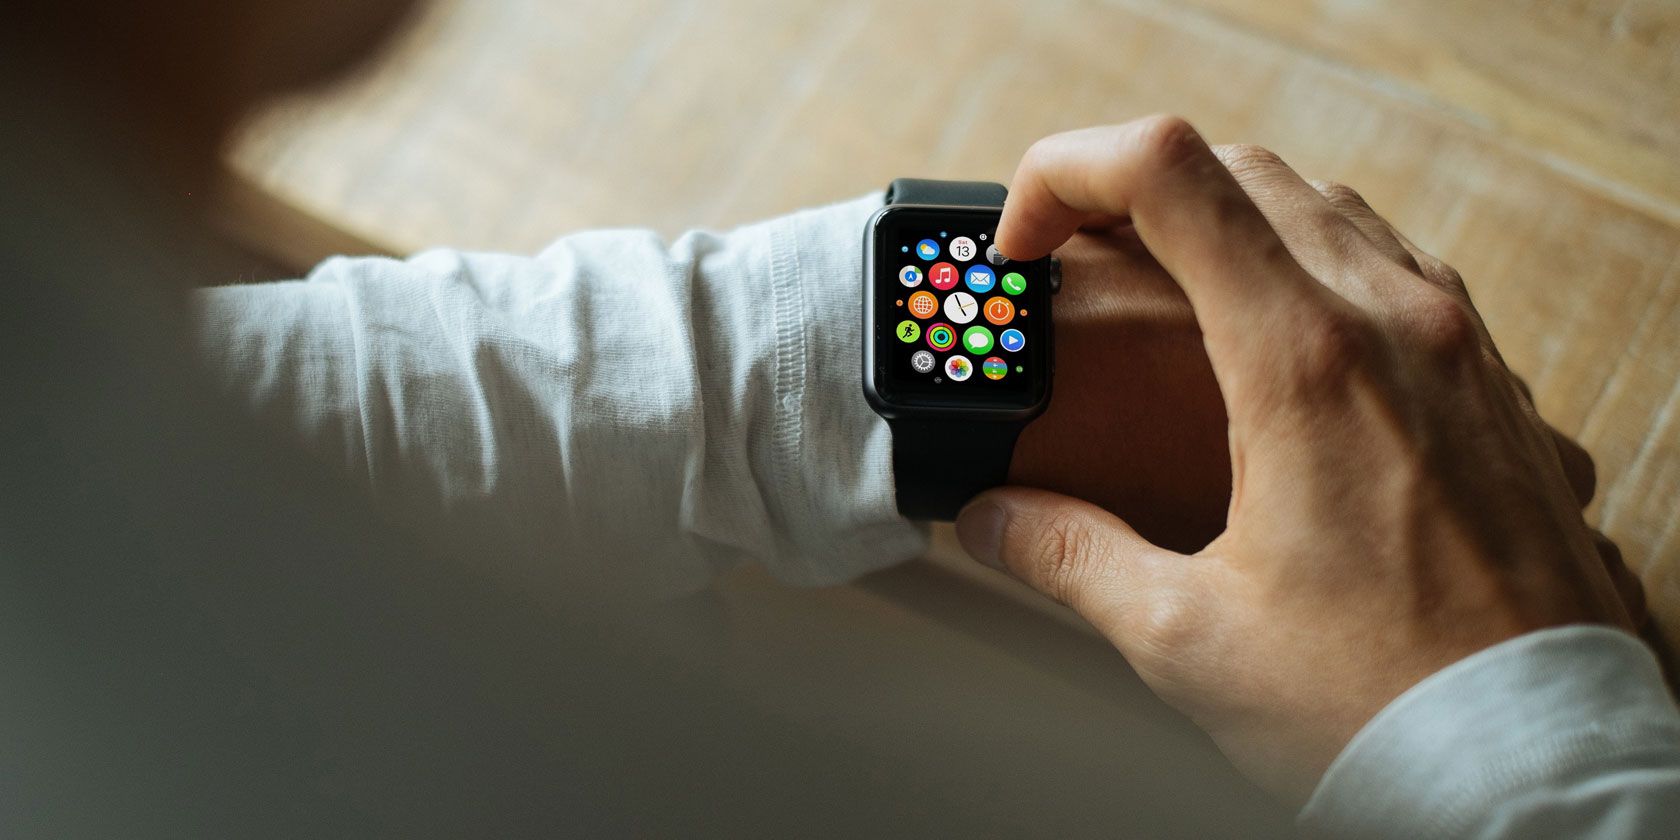 pourquoi acheter une montre connectée smartwatch ?